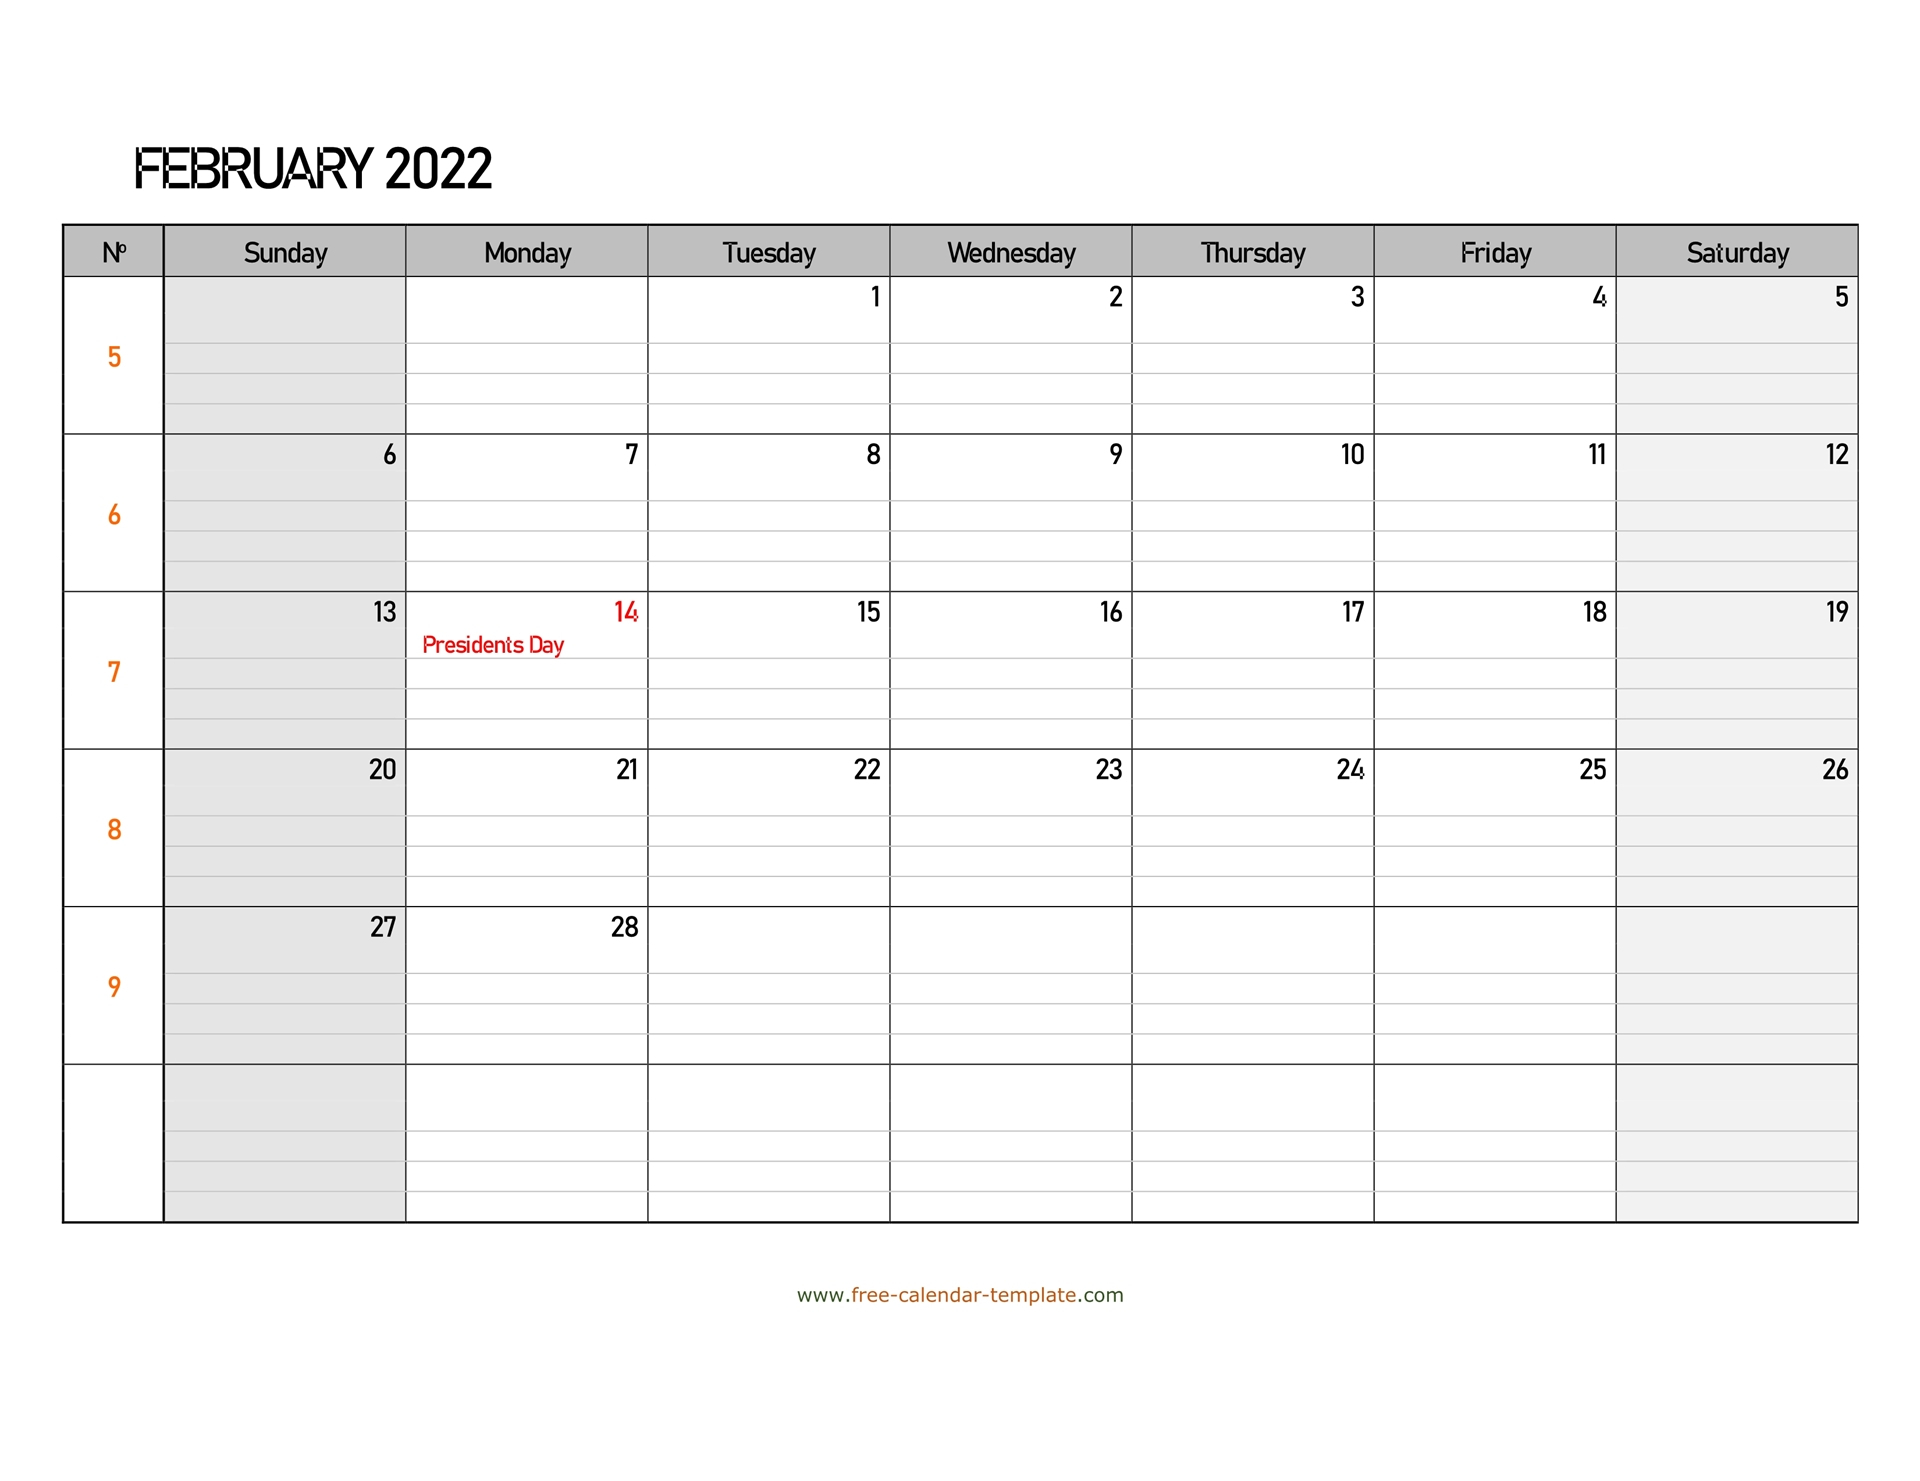 Get Calendar 2022 February Kalnirnay